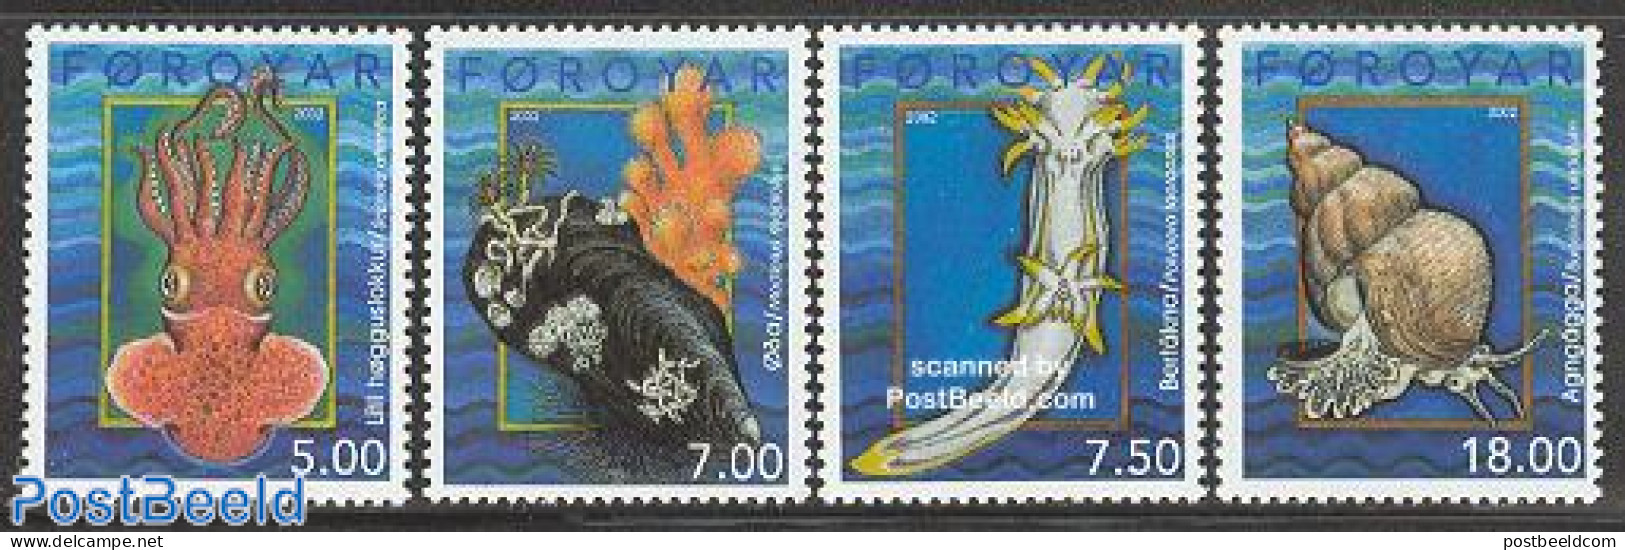 Faroe Islands 2002 Moluscs 4v, Mint NH, Nature - Shells & Crustaceans - Vita Acquatica